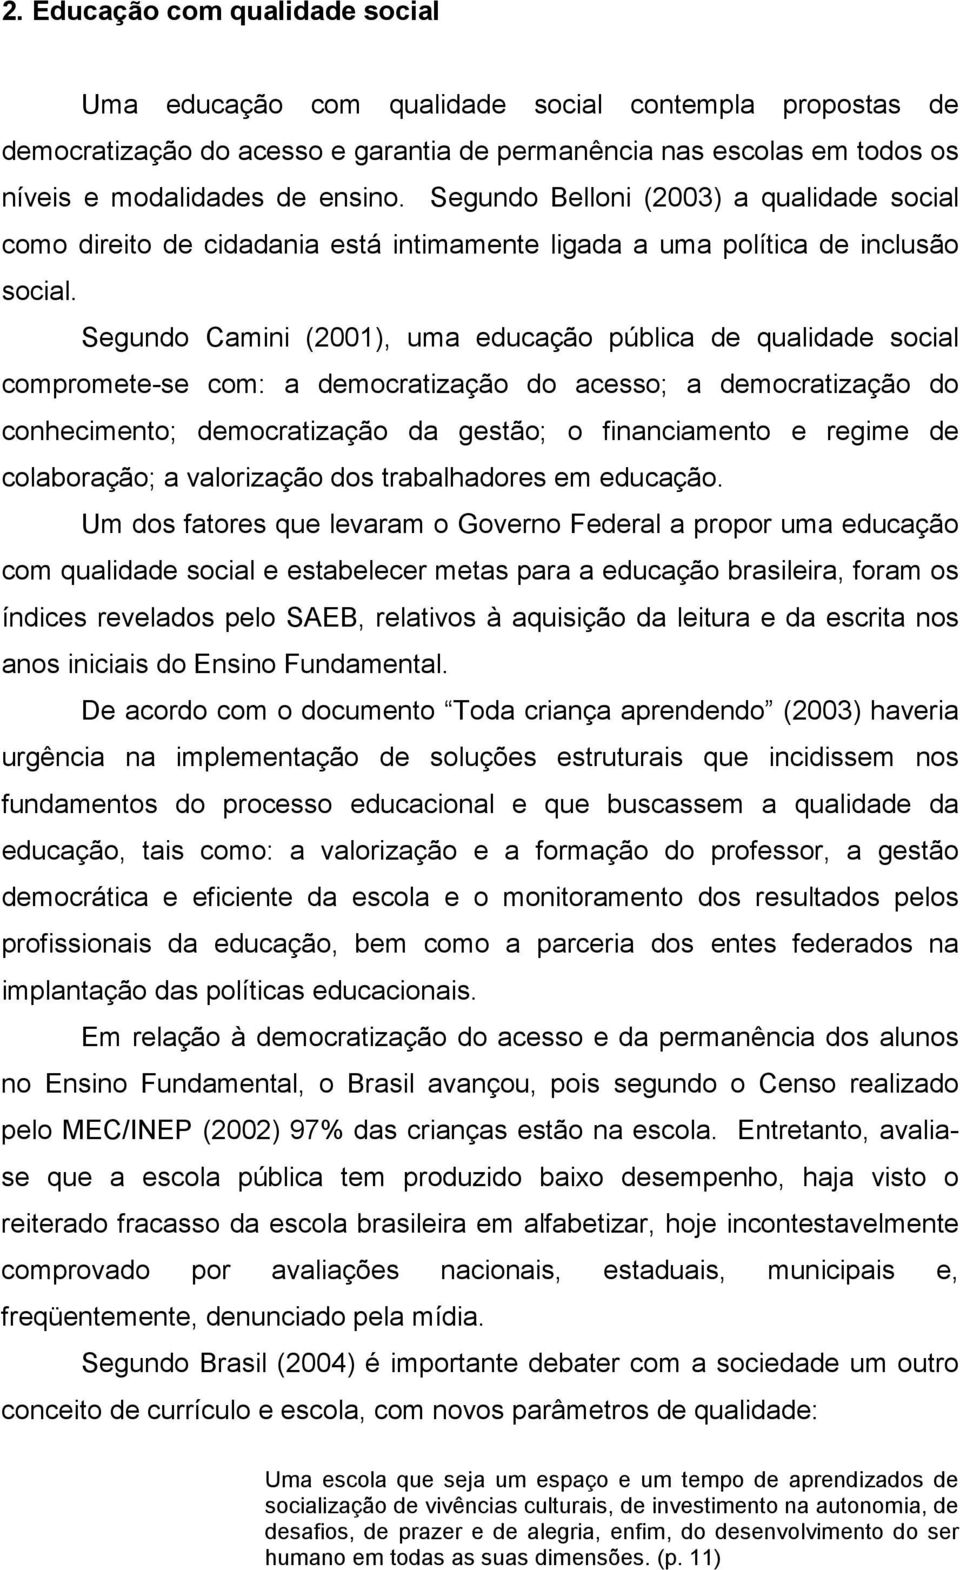 Segundo Camini (2001), uma educação pública de qualidade social compromete-se com: a democratização do acesso; a democratização do conhecimento; democratização da gestão; o financiamento e regime de